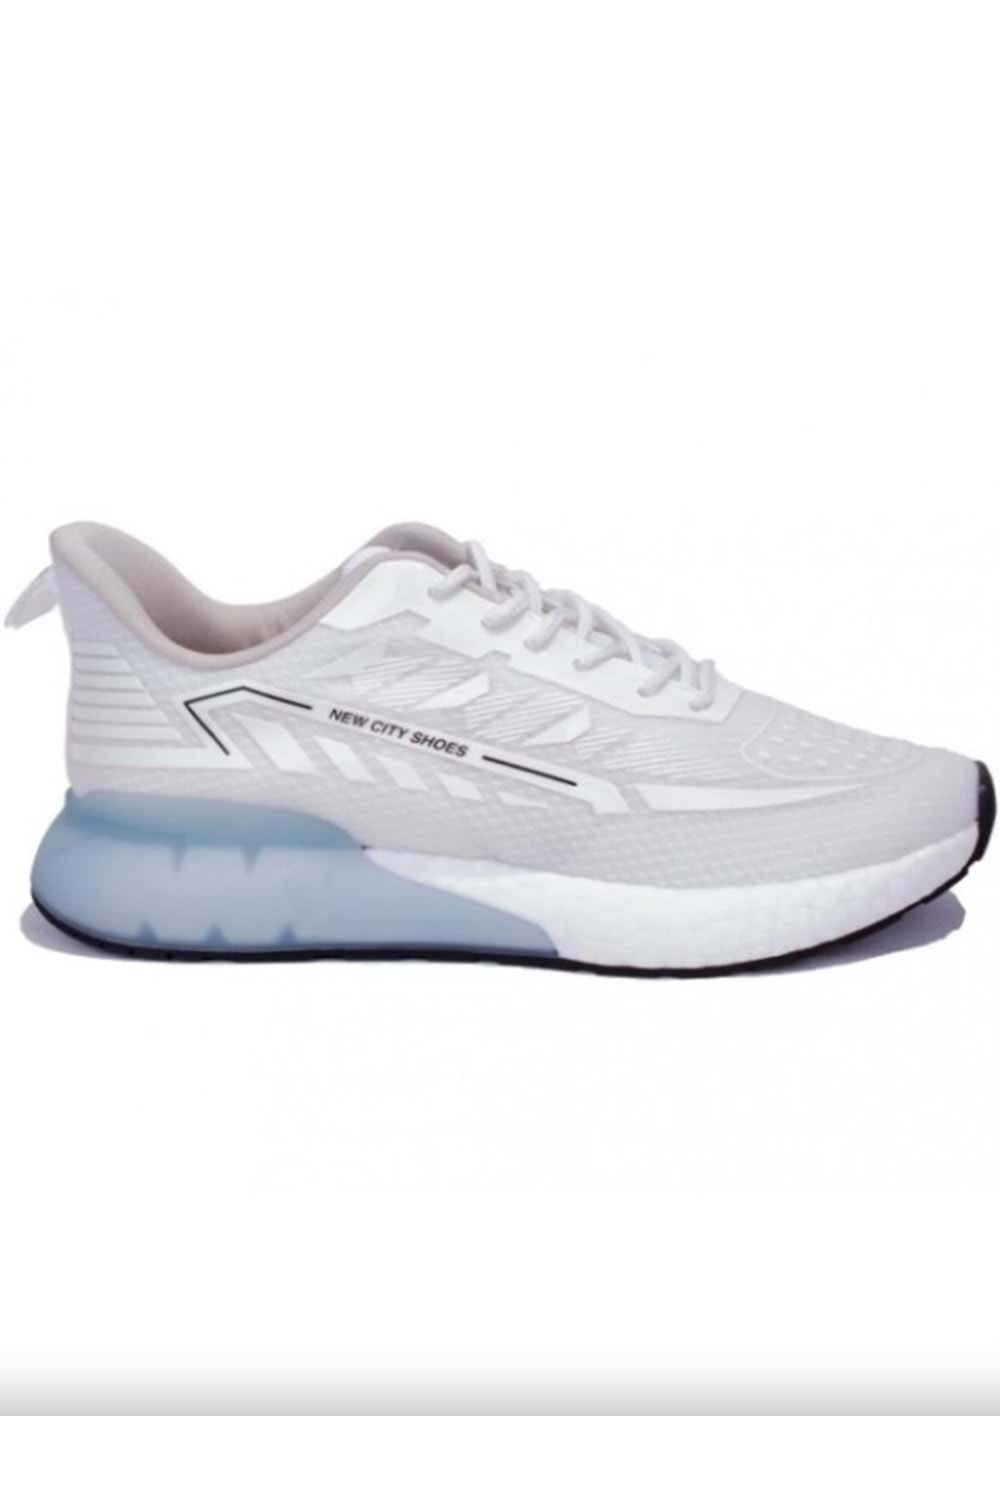 Gamelu 23Yz Nice Kadın Sneakers Keten Spor Ayakkabı - Beyaz - ST00169-Beyaz-38